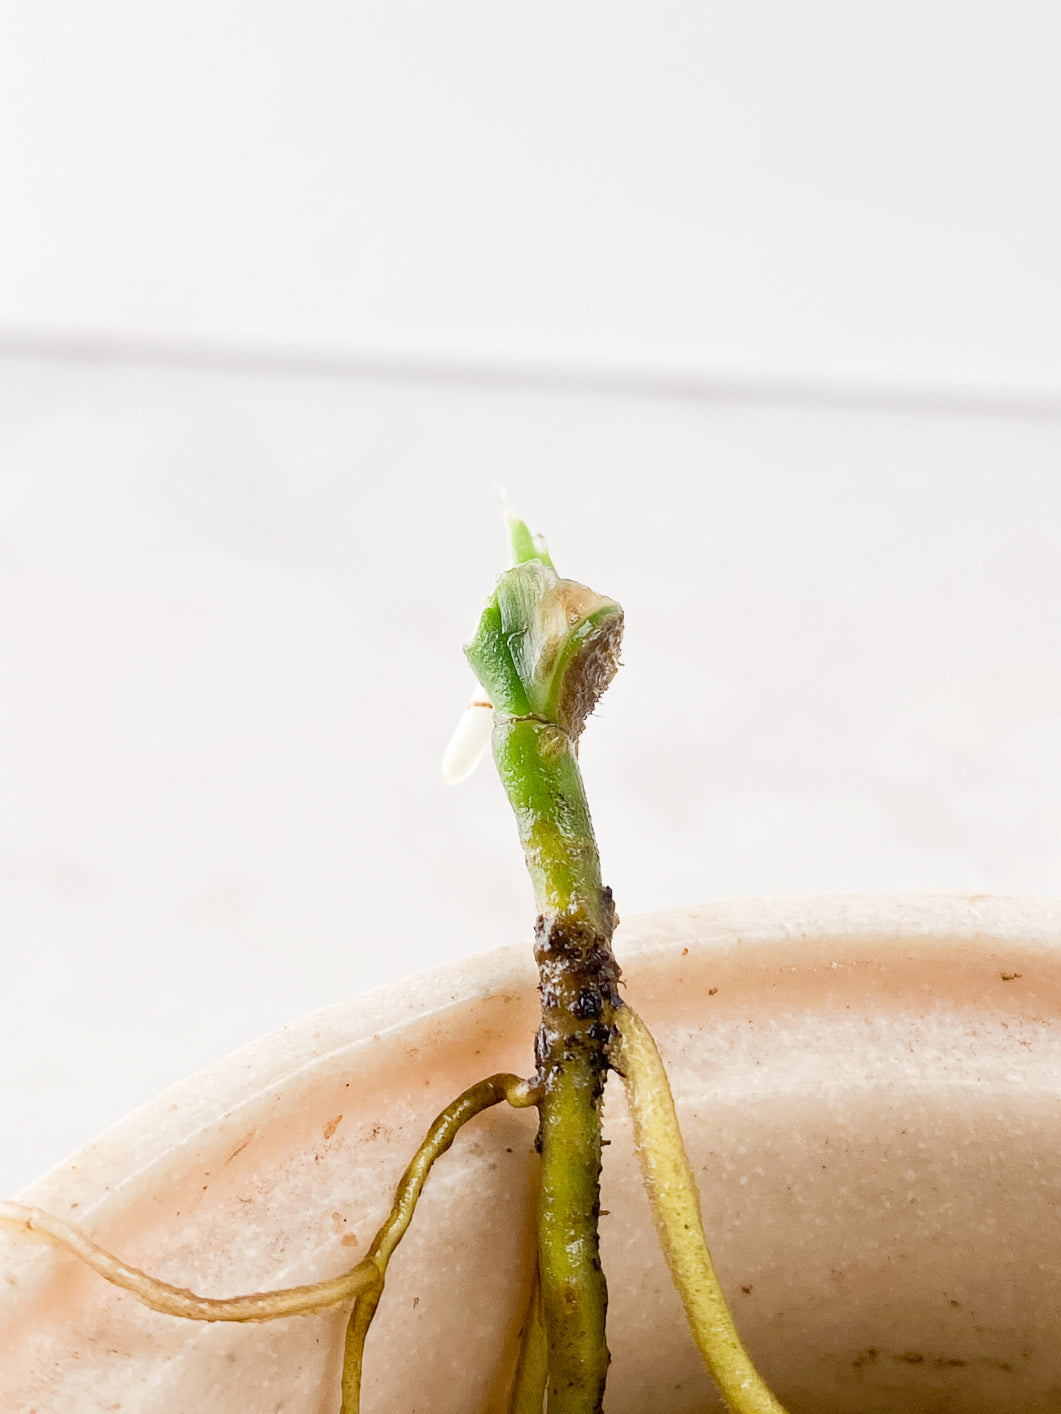 Monstera Adansonii Archipelago1 sprout